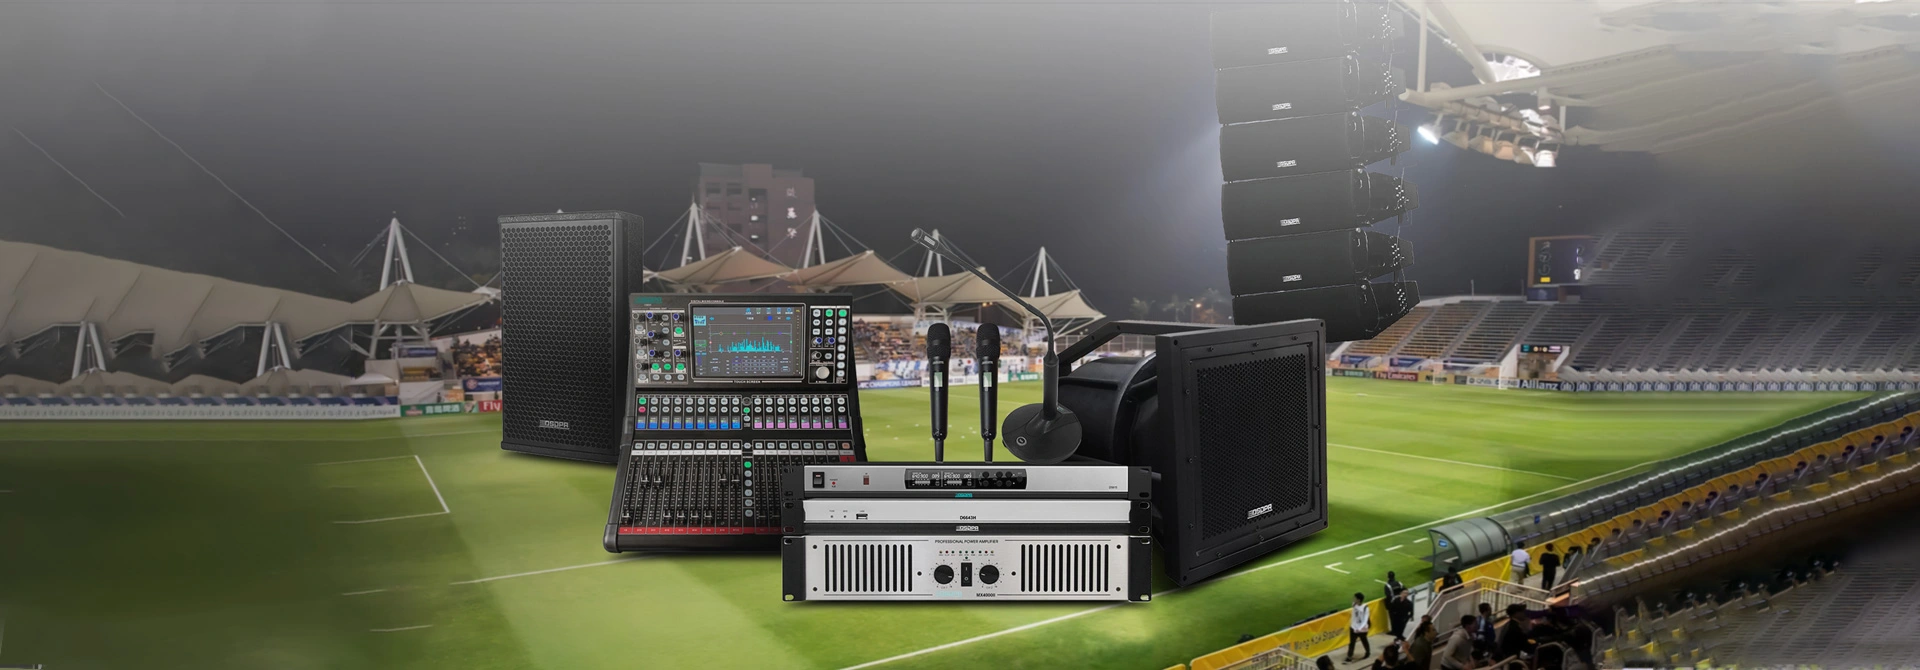 Giải pháp hệ thống âm thanh chuyên nghiệp cho sân vận động bóng đá